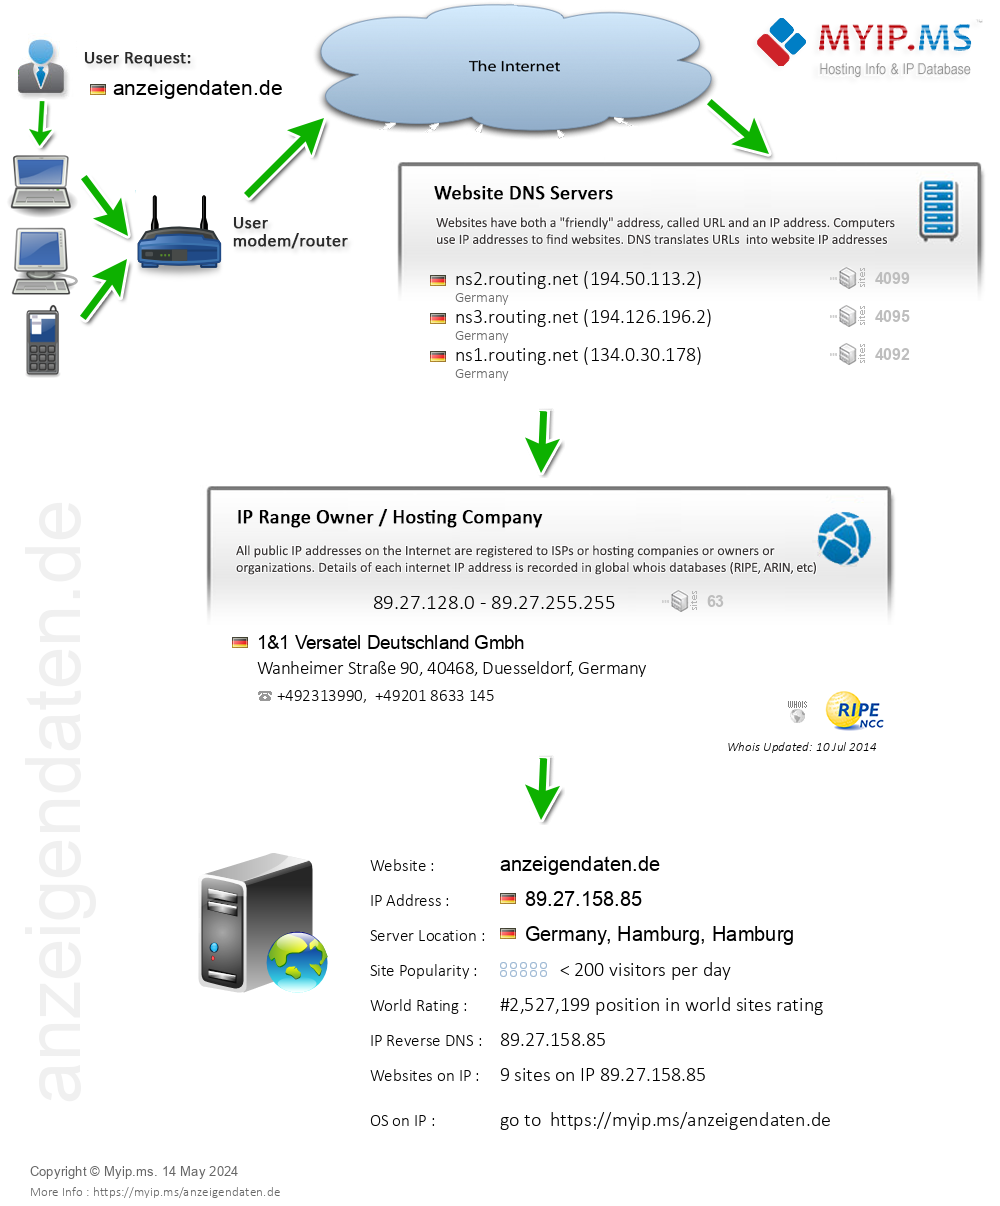 Anzeigendaten.de - Website Hosting Visual IP Diagram